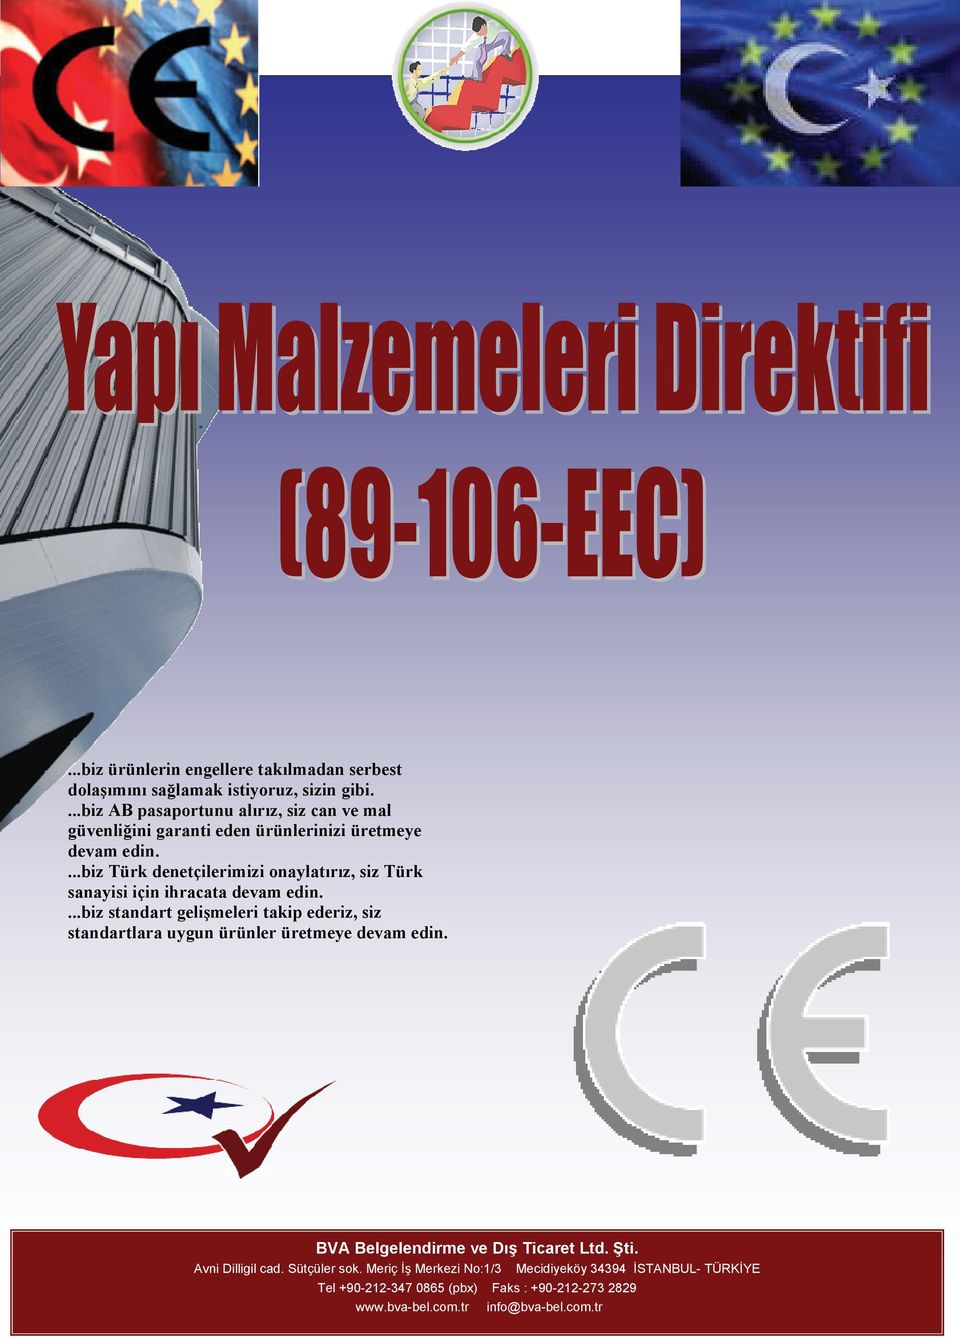 ...biz Türk denetçilerimizi onaylatırız, siz Türk sanayisi için ihracata devam edin.